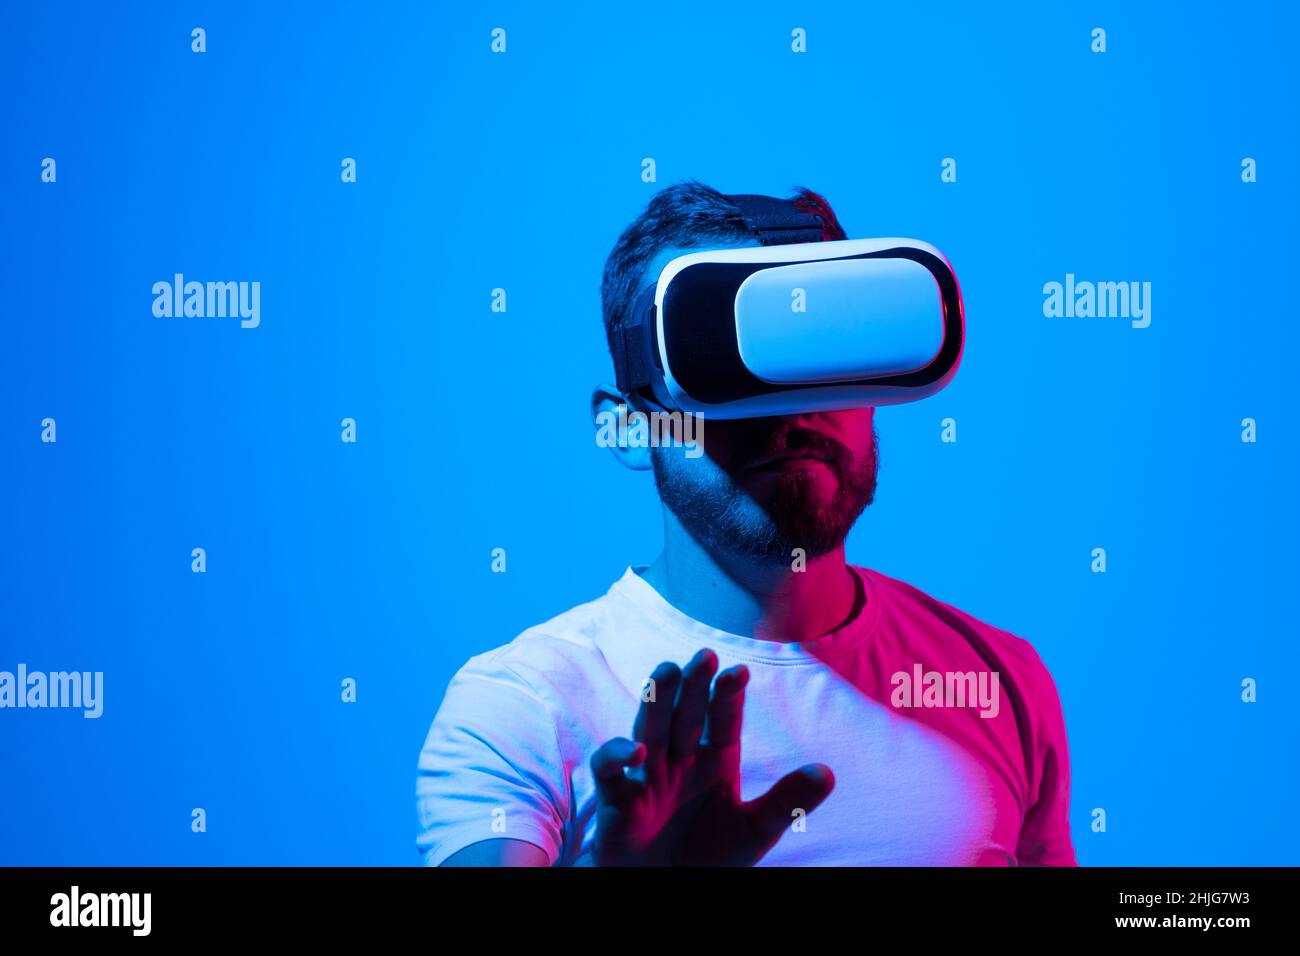 Staunender junger bärtiger Mann, der eine High-Tech-Smart-VR-Brille trägt,  360-Grad-Videos ansieht oder ein Videospiel im Metaverse spielt  Stockfotografie - Alamy